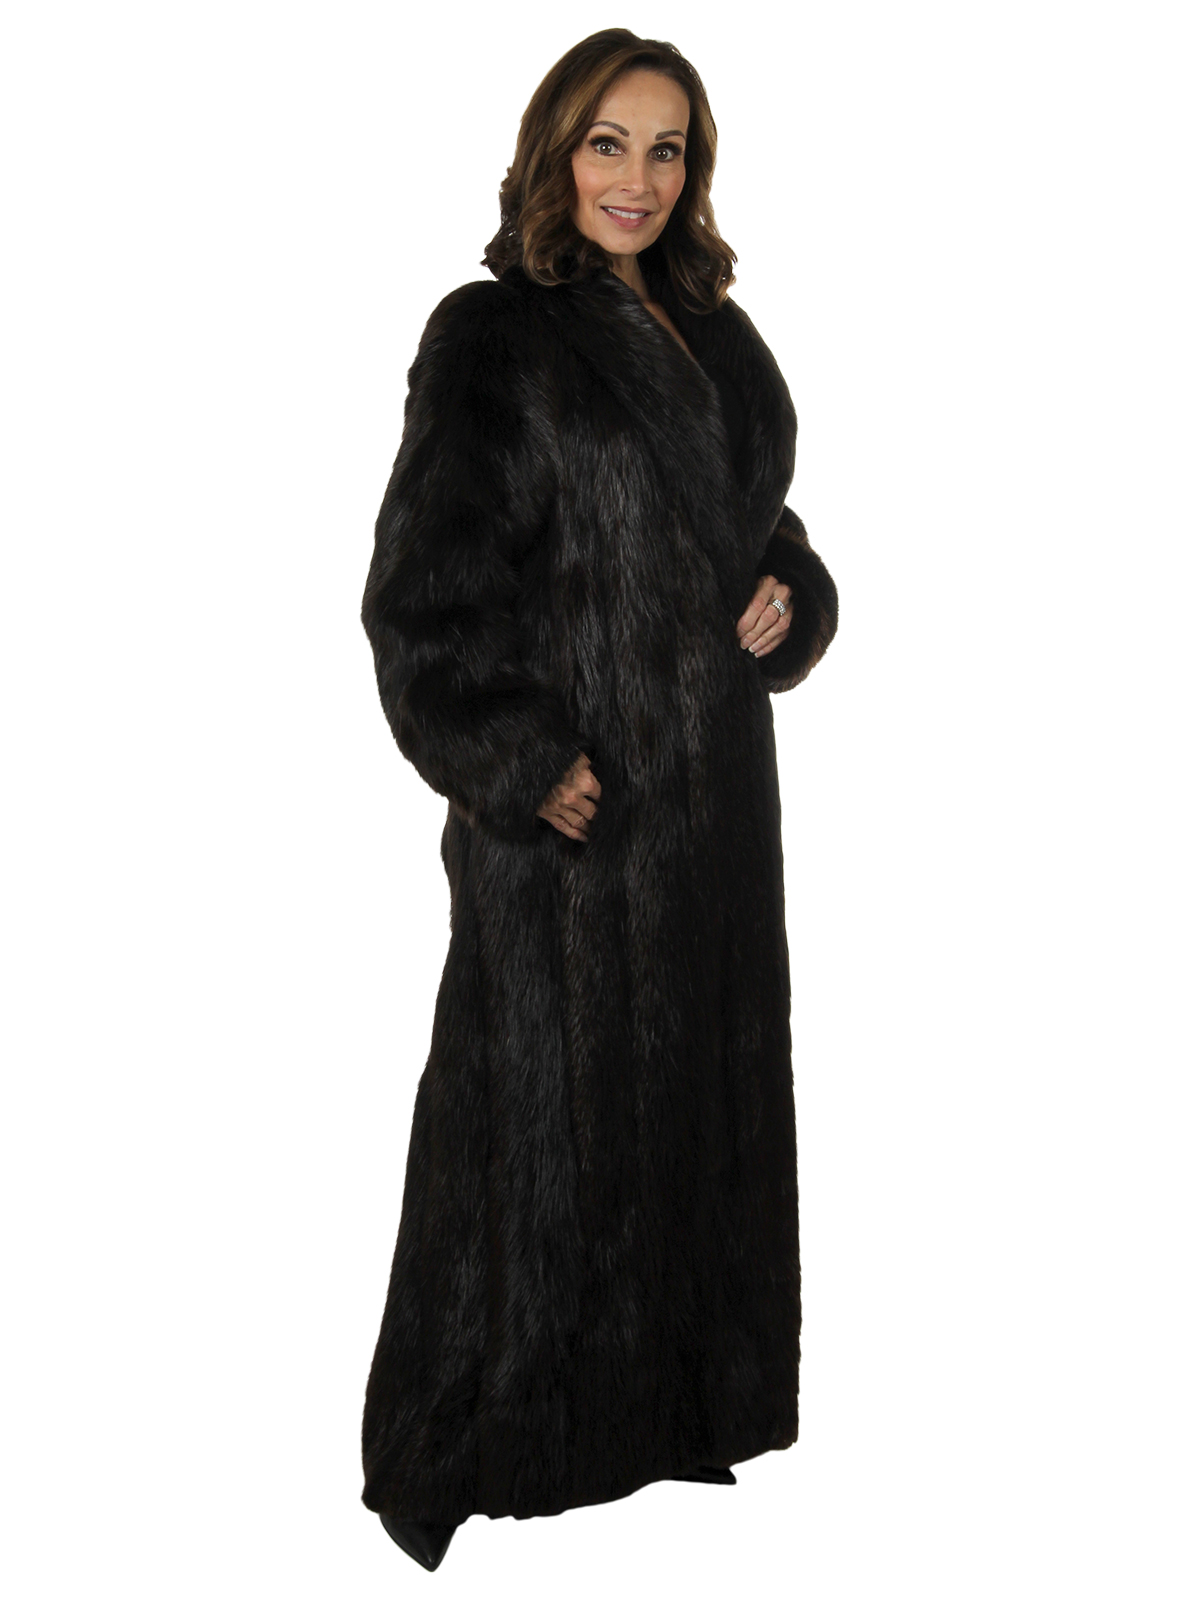 Ebony Long Hair Beaver Fur Coat - Medium | Estate Furs